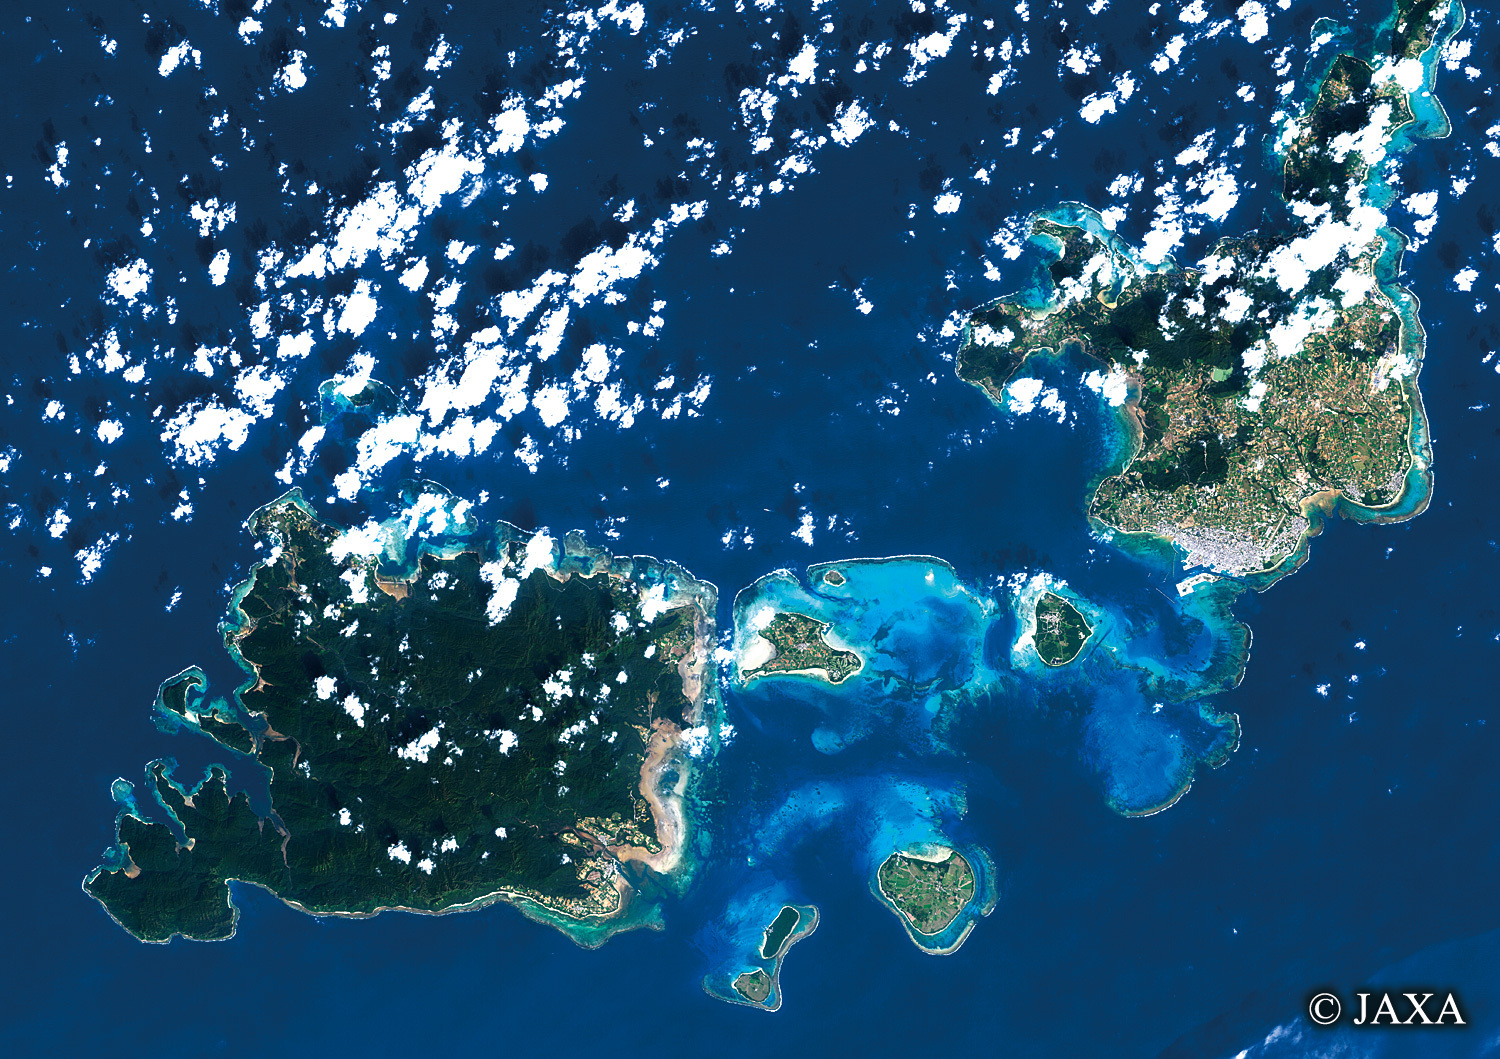 だいちから見た日本の都市 西表島と石垣島:衛星画像